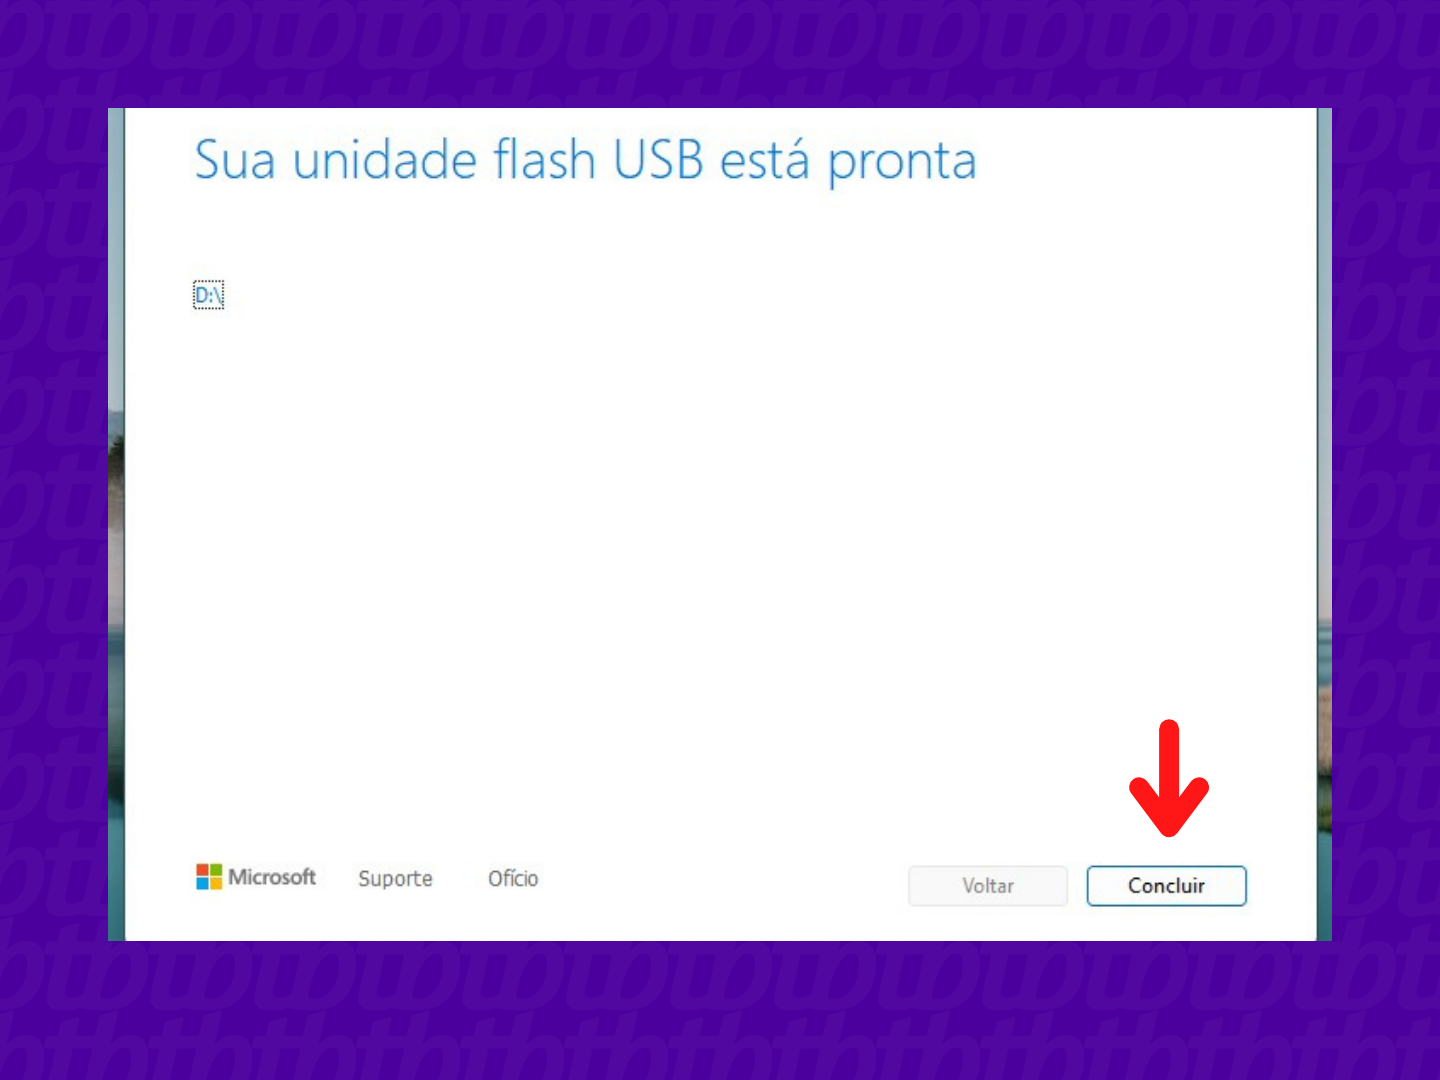 Tela do Windows com a mensagem "Sua unidade flash USB está pronta" e uma seta indicando o botão "Concluir"